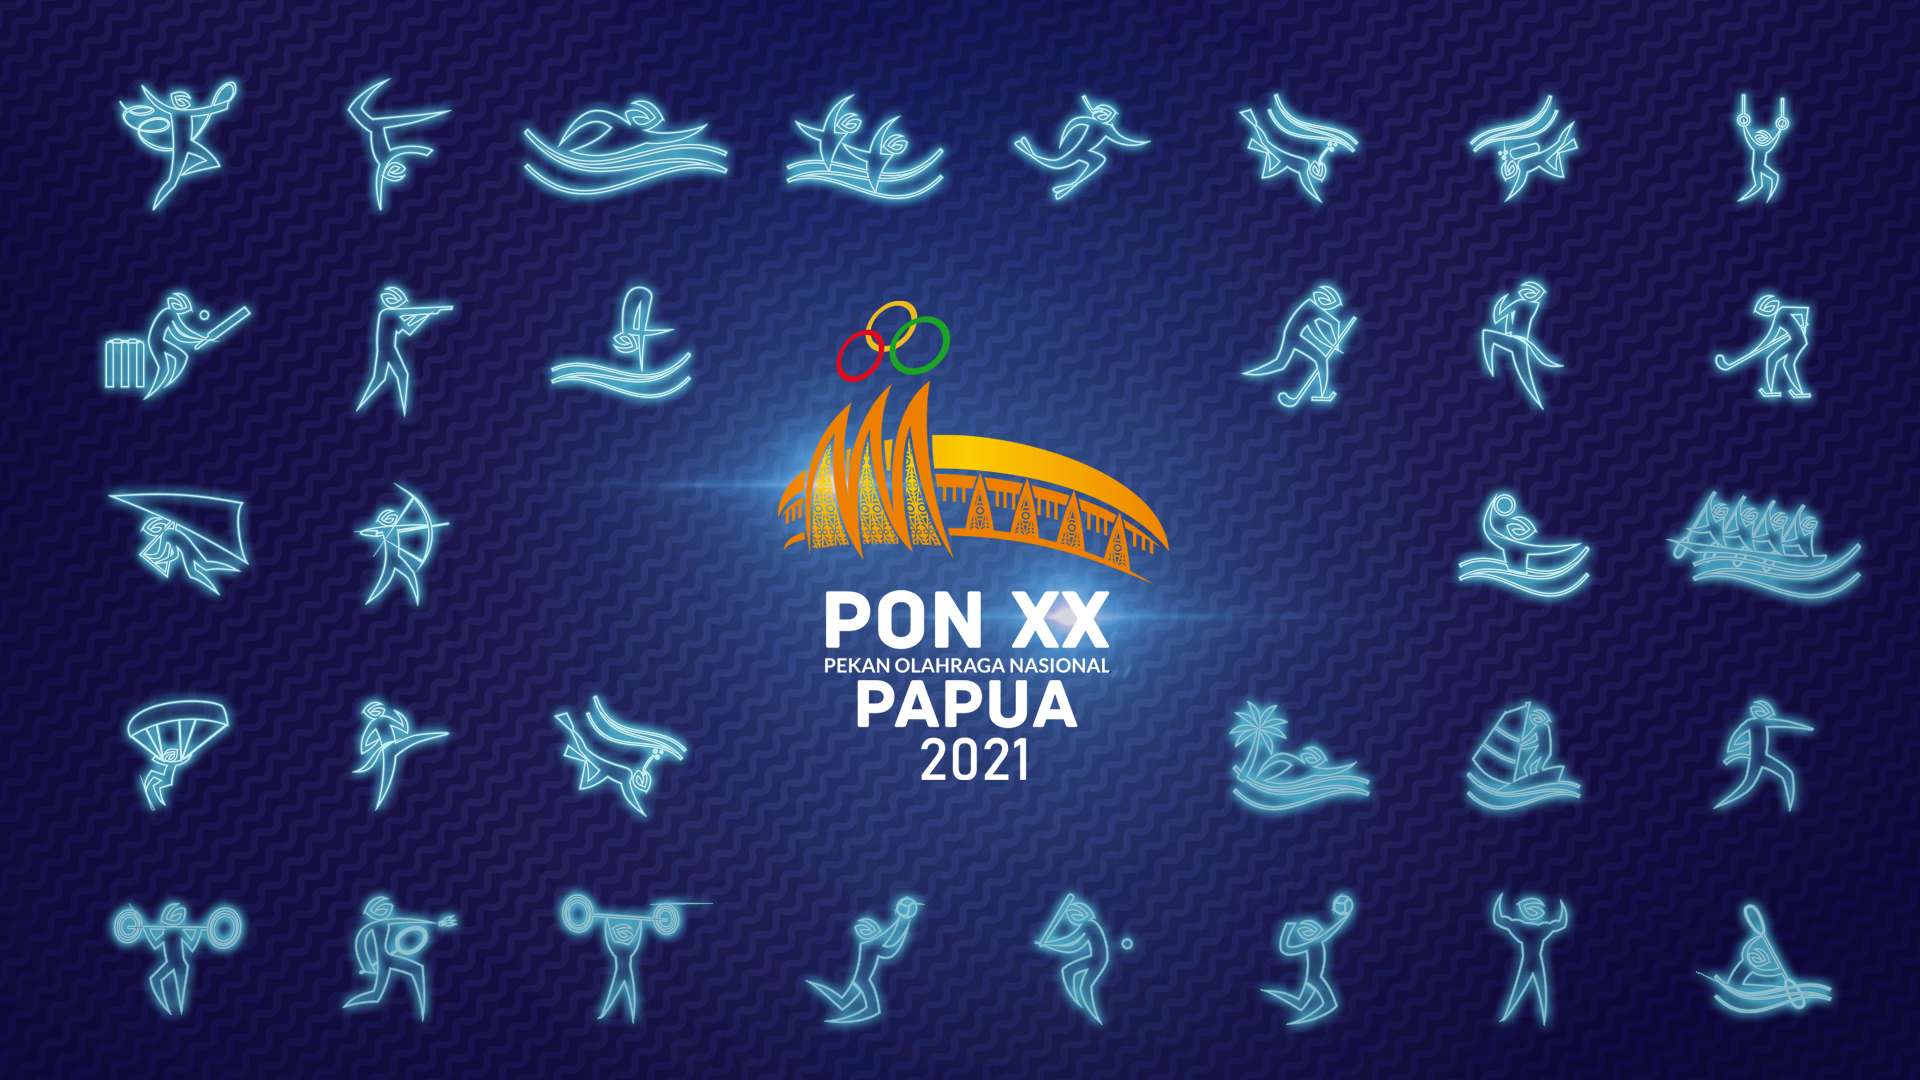 PON Papua Siap Hadapi Ancaman Malaria, Covid-19, dan Kelompok Kriminal Bersenjata